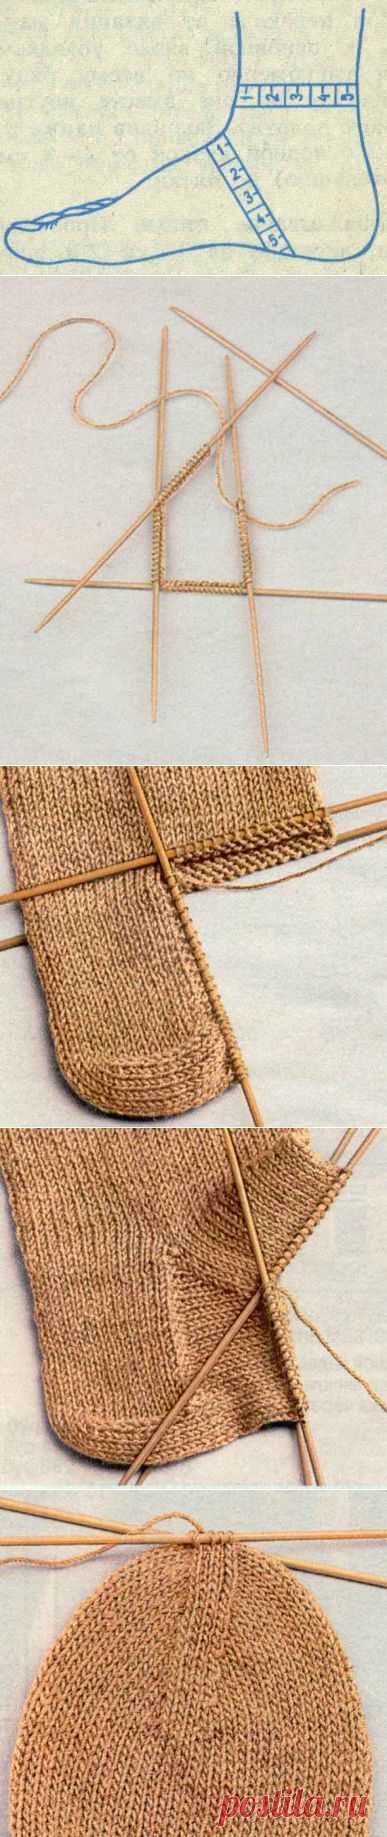 Азбука вязания (как связать носок) | Варварушка-Рукодельница